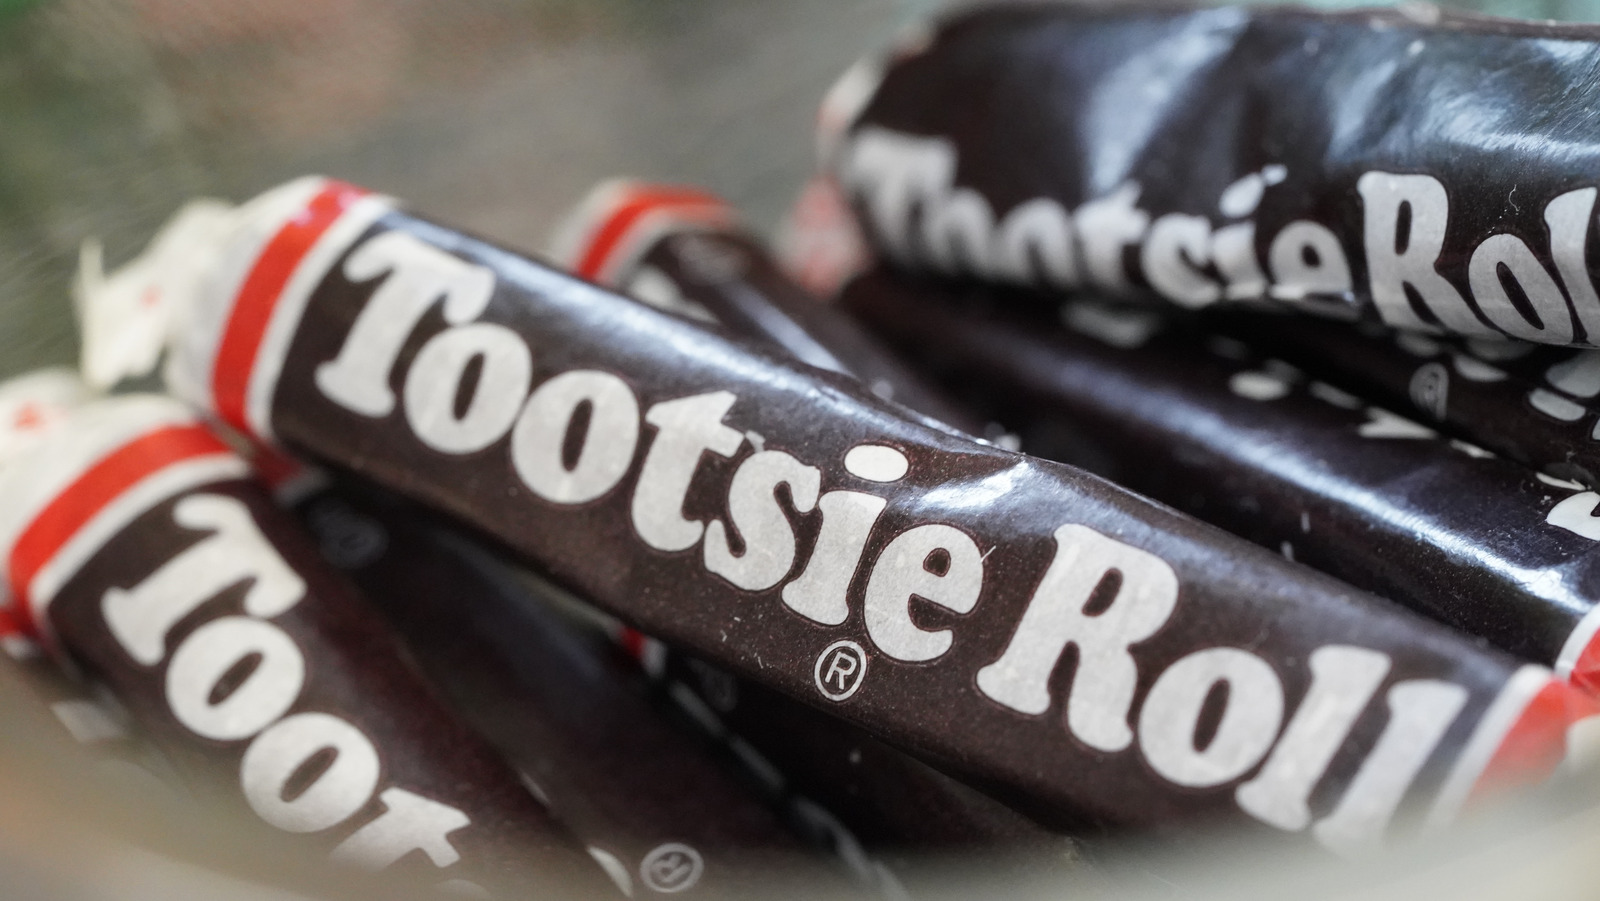 Tootsie Roll -Hot Chocolate